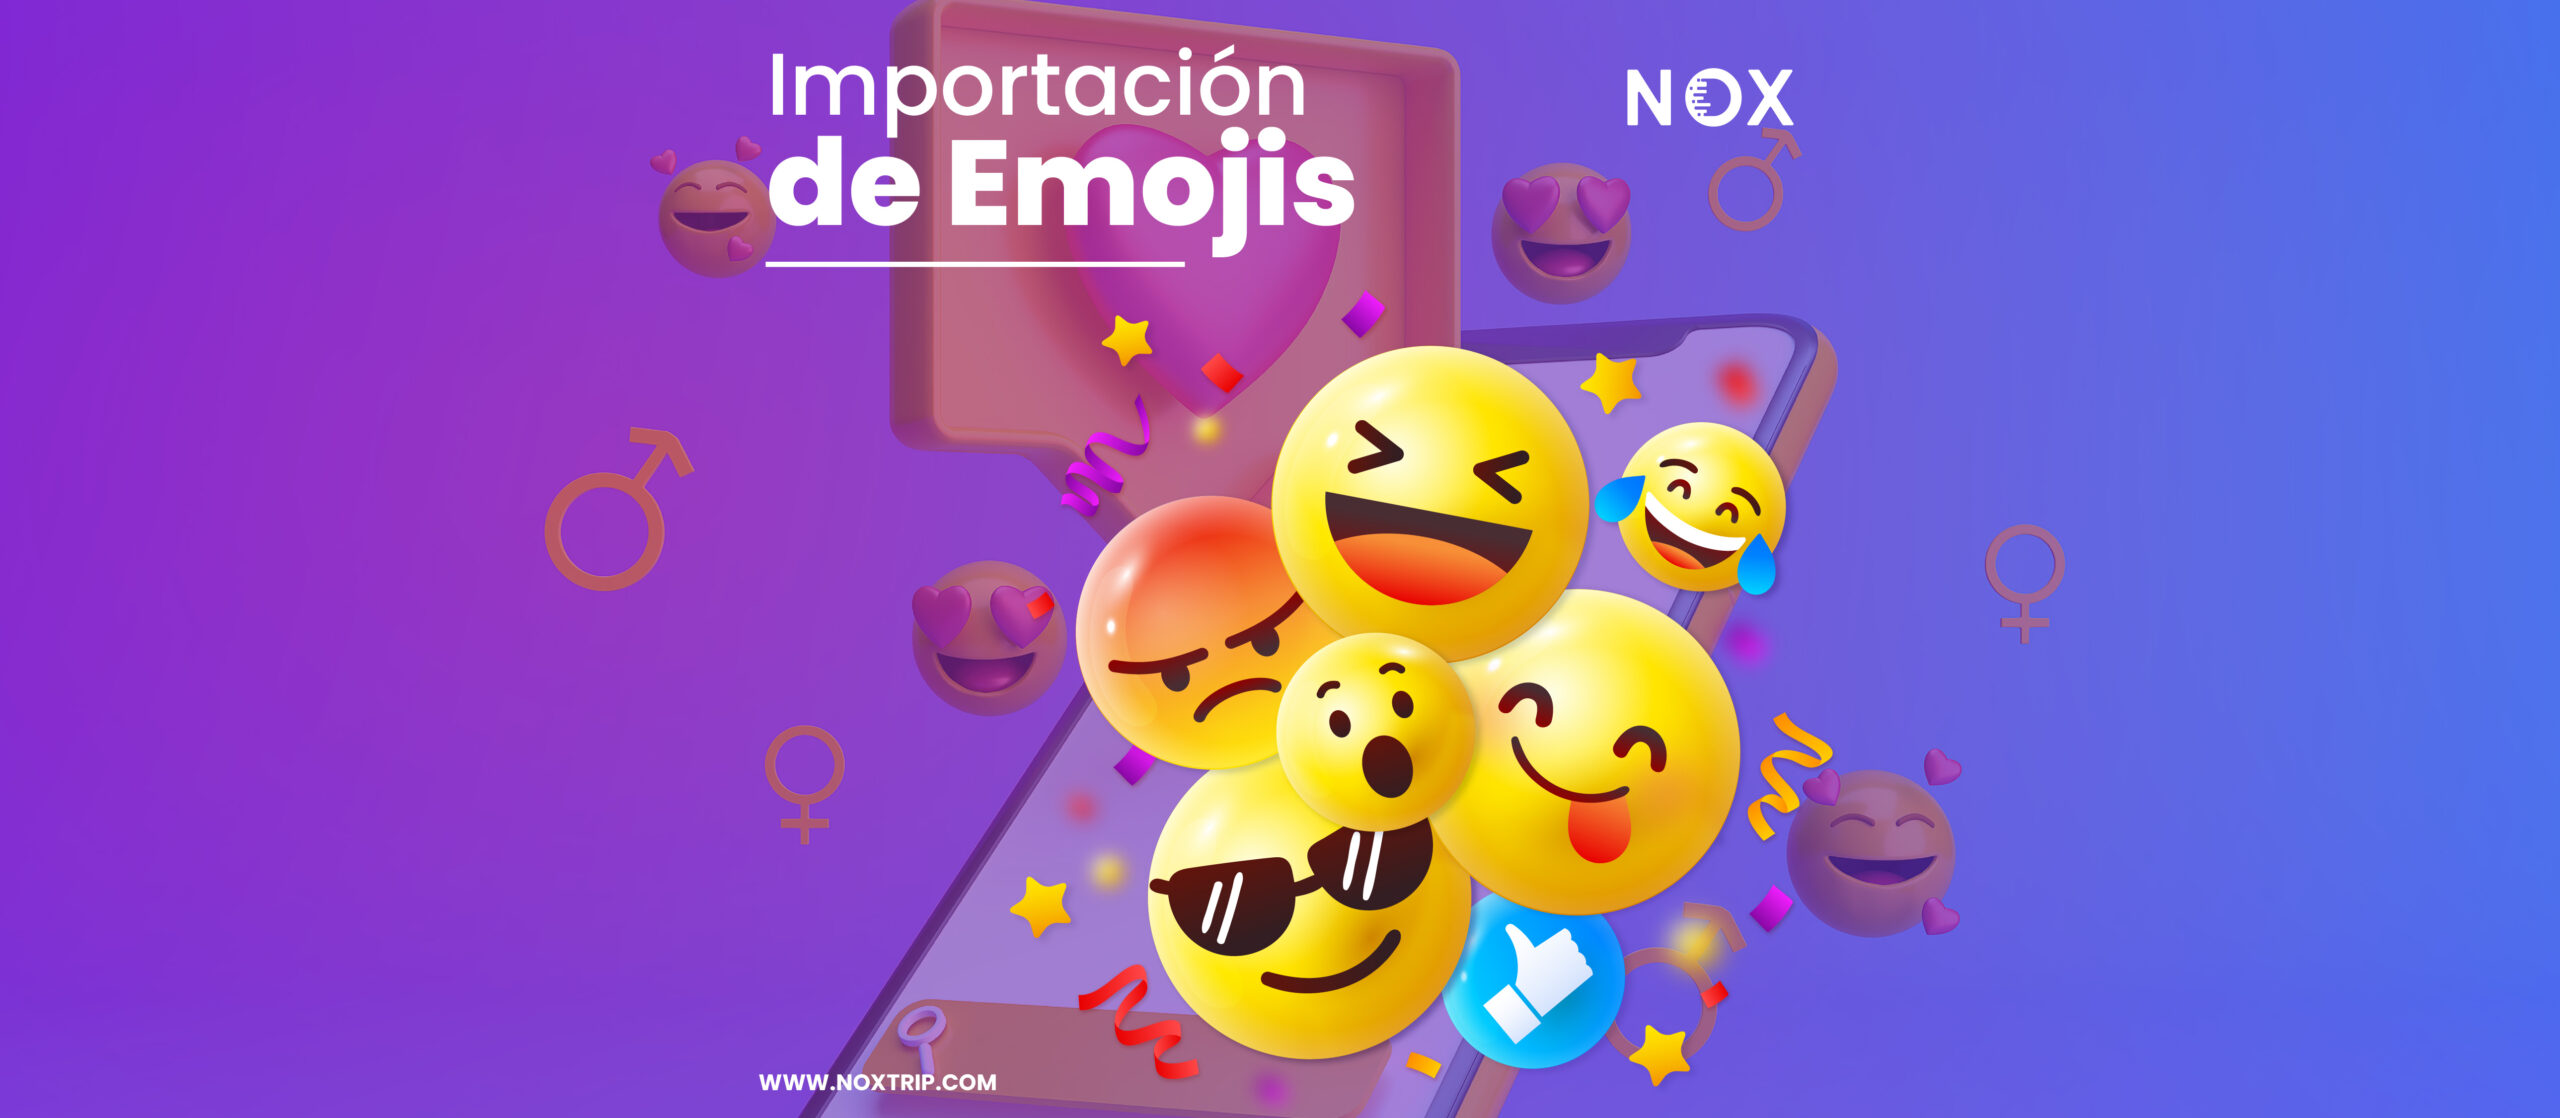 😄Emojis y Comunicación: Importación de Emojis